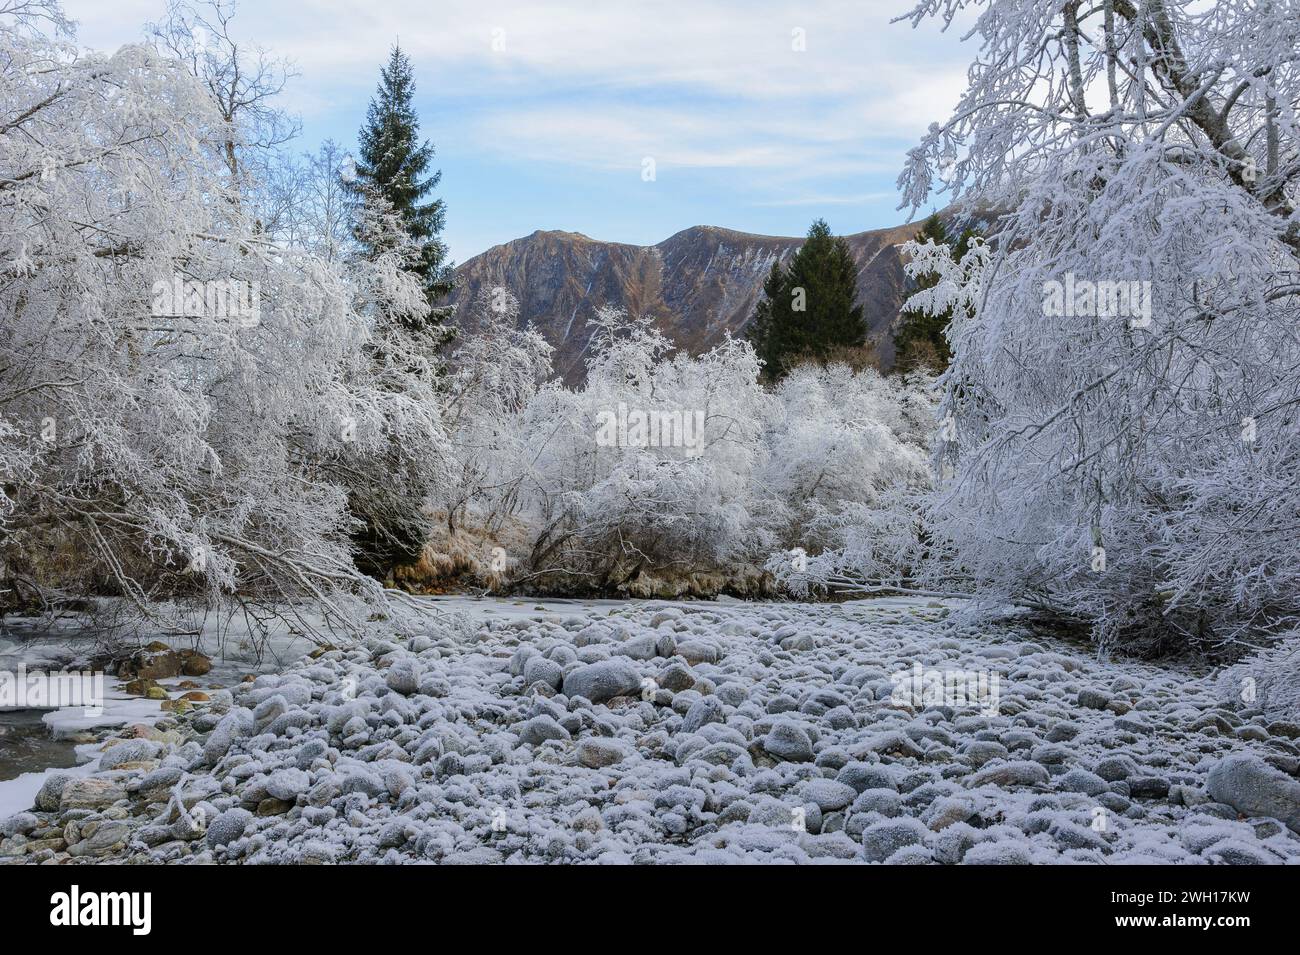 Eine ruhige, frostige Szene entfaltet sich mit einem Fluss, der sich durch einen Wald und Berge unter einem klaren Winterhimmel schlängelt. Stockfoto